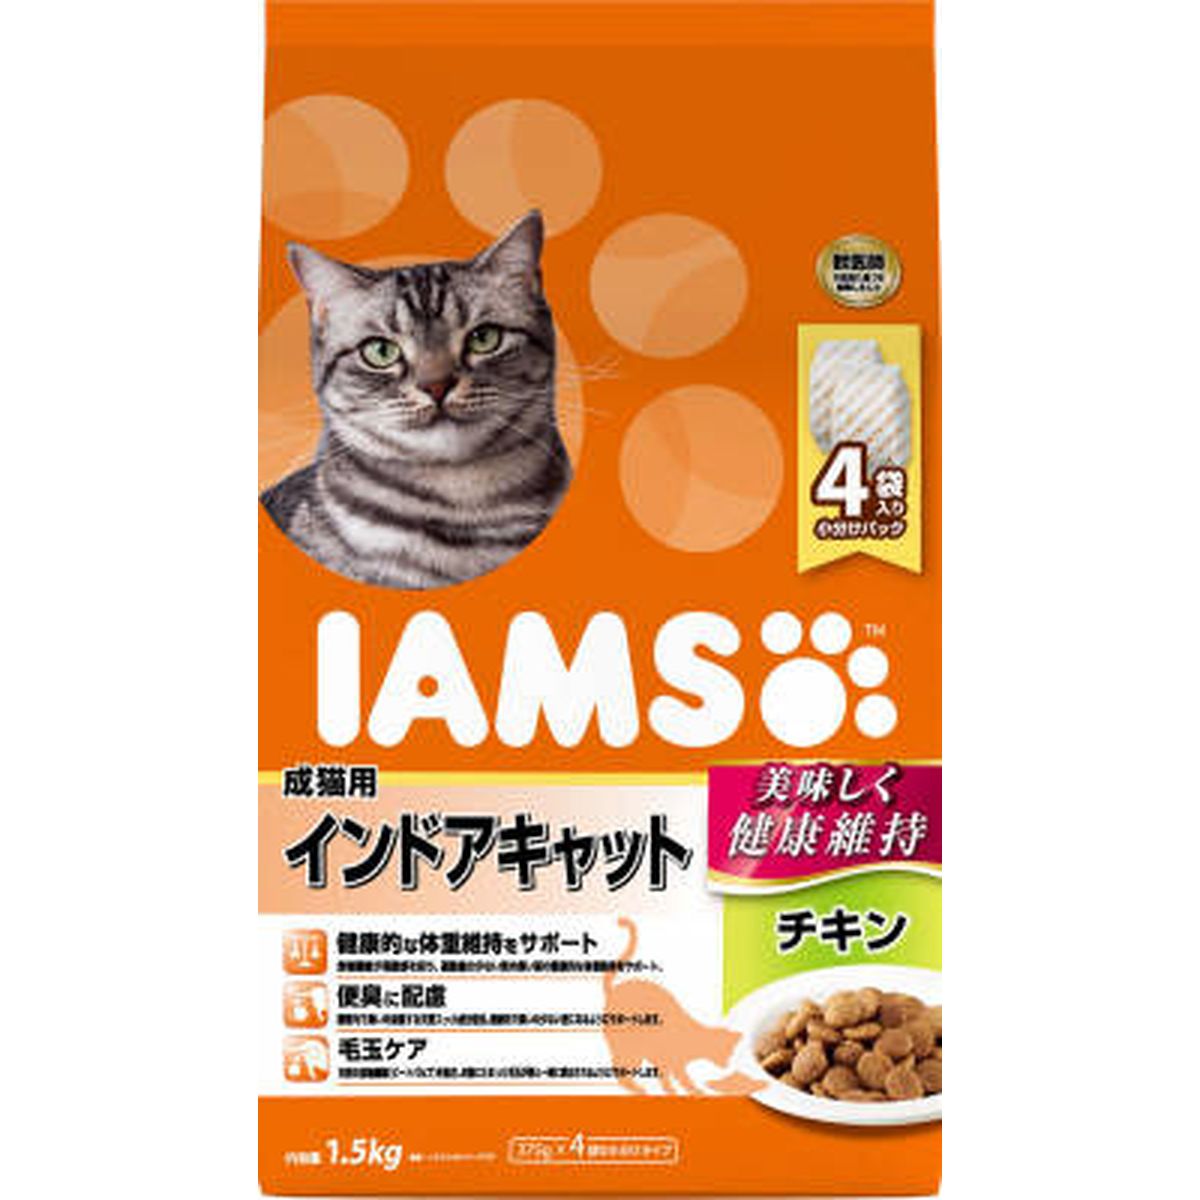 アイムス 成猫用 インドアキャット チキン1.5kg×6袋